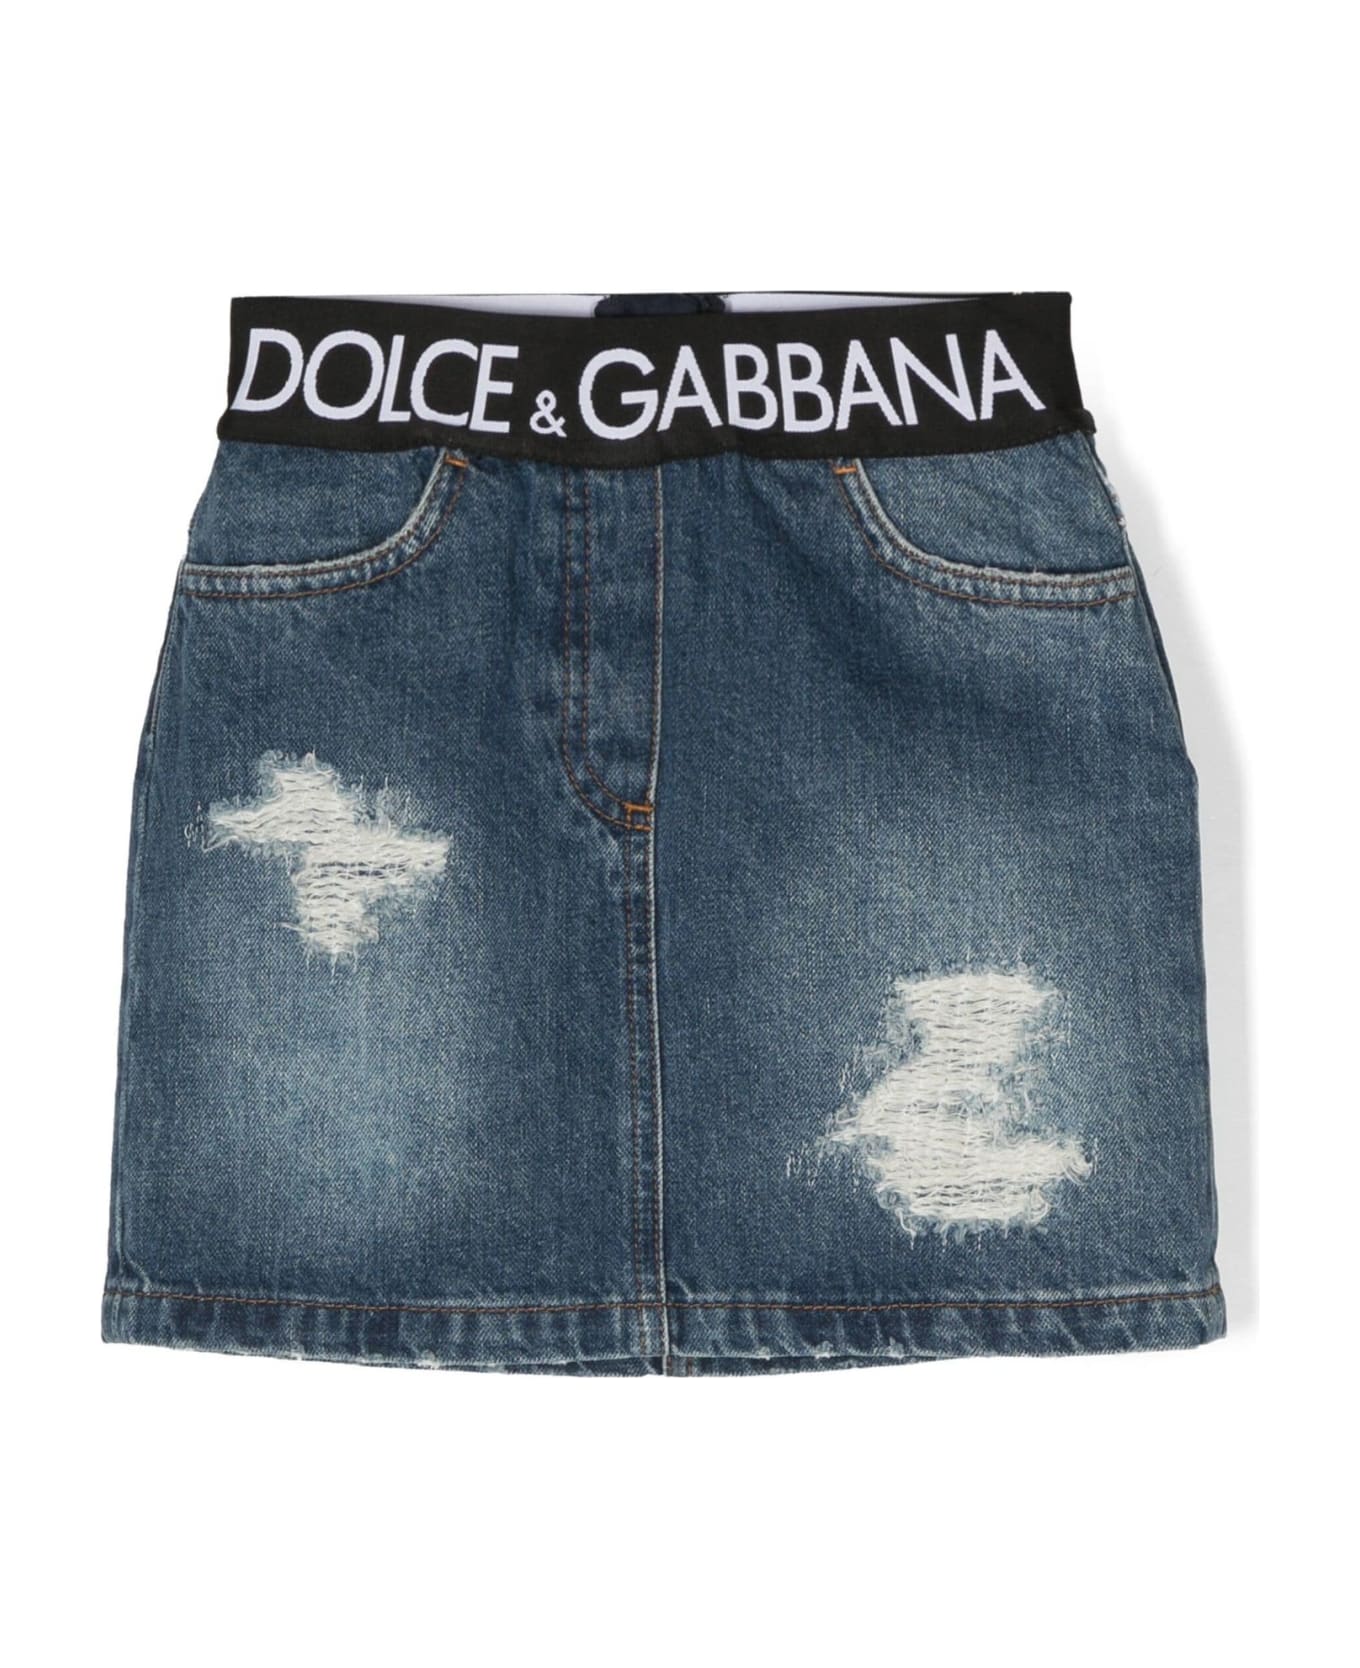 Dolce & Gabbana Blue Cotton Skirt